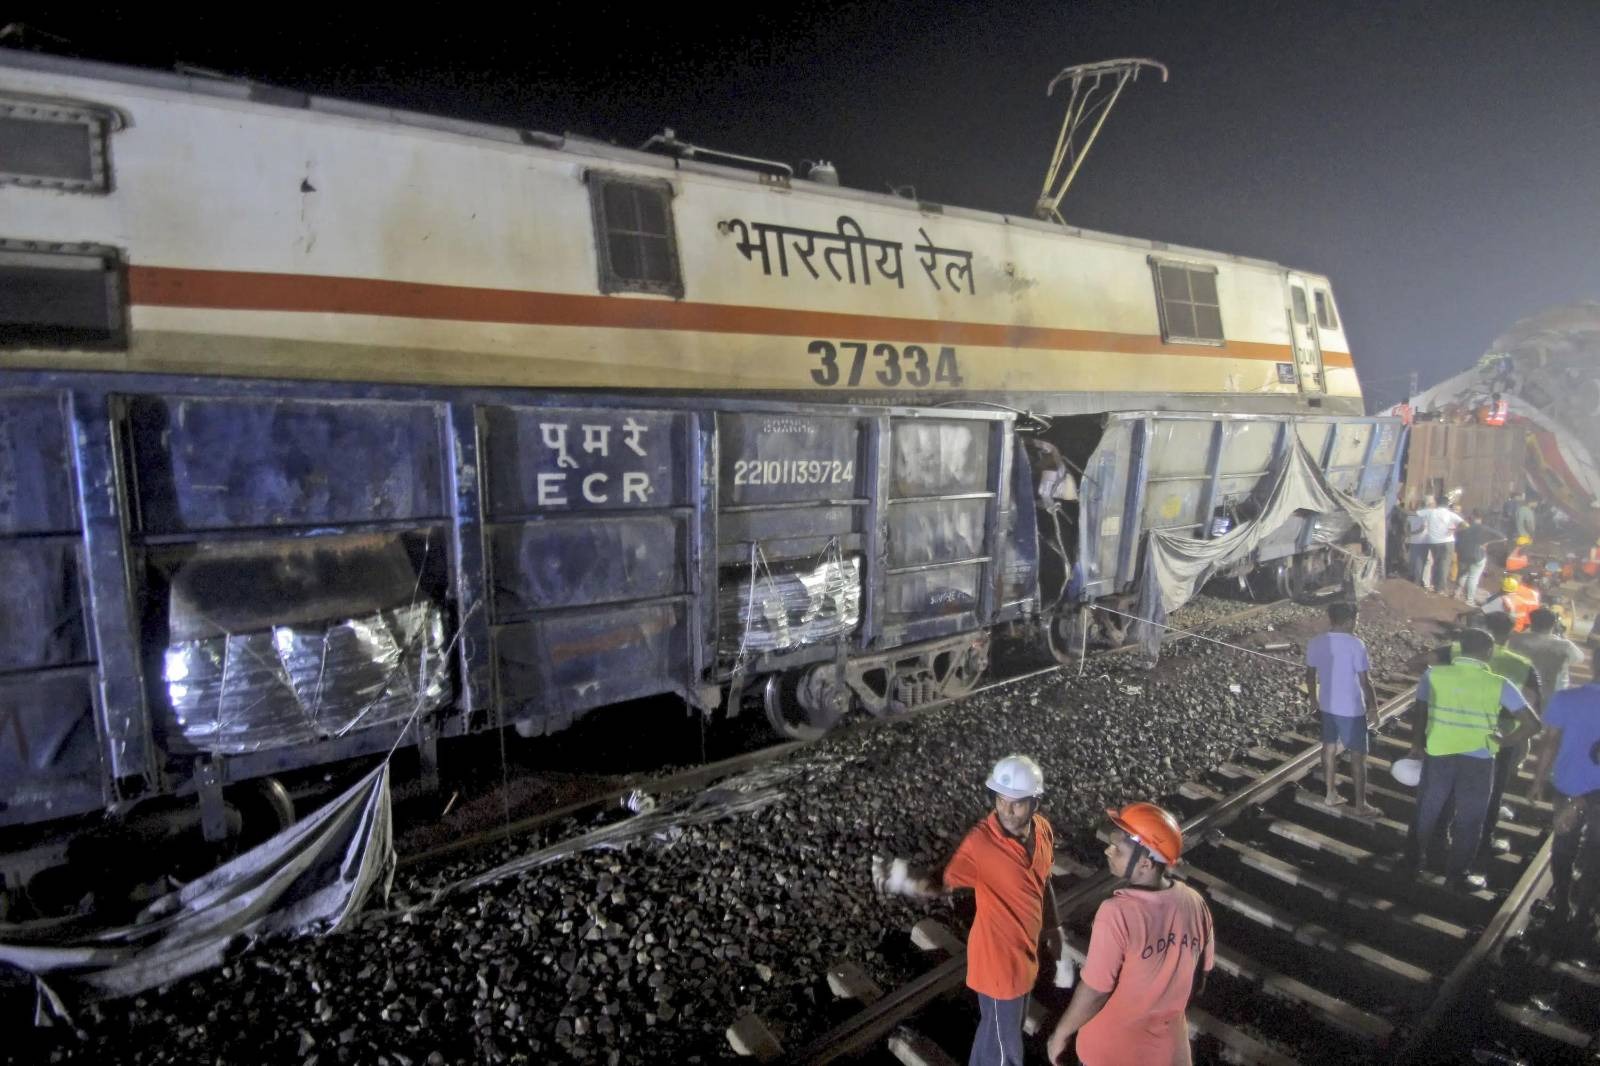 အိန္ဒိယမှာ ရထားချင်းတိုက်မိရာက လူ ၂၃၀ ကျော်သေဆုံး